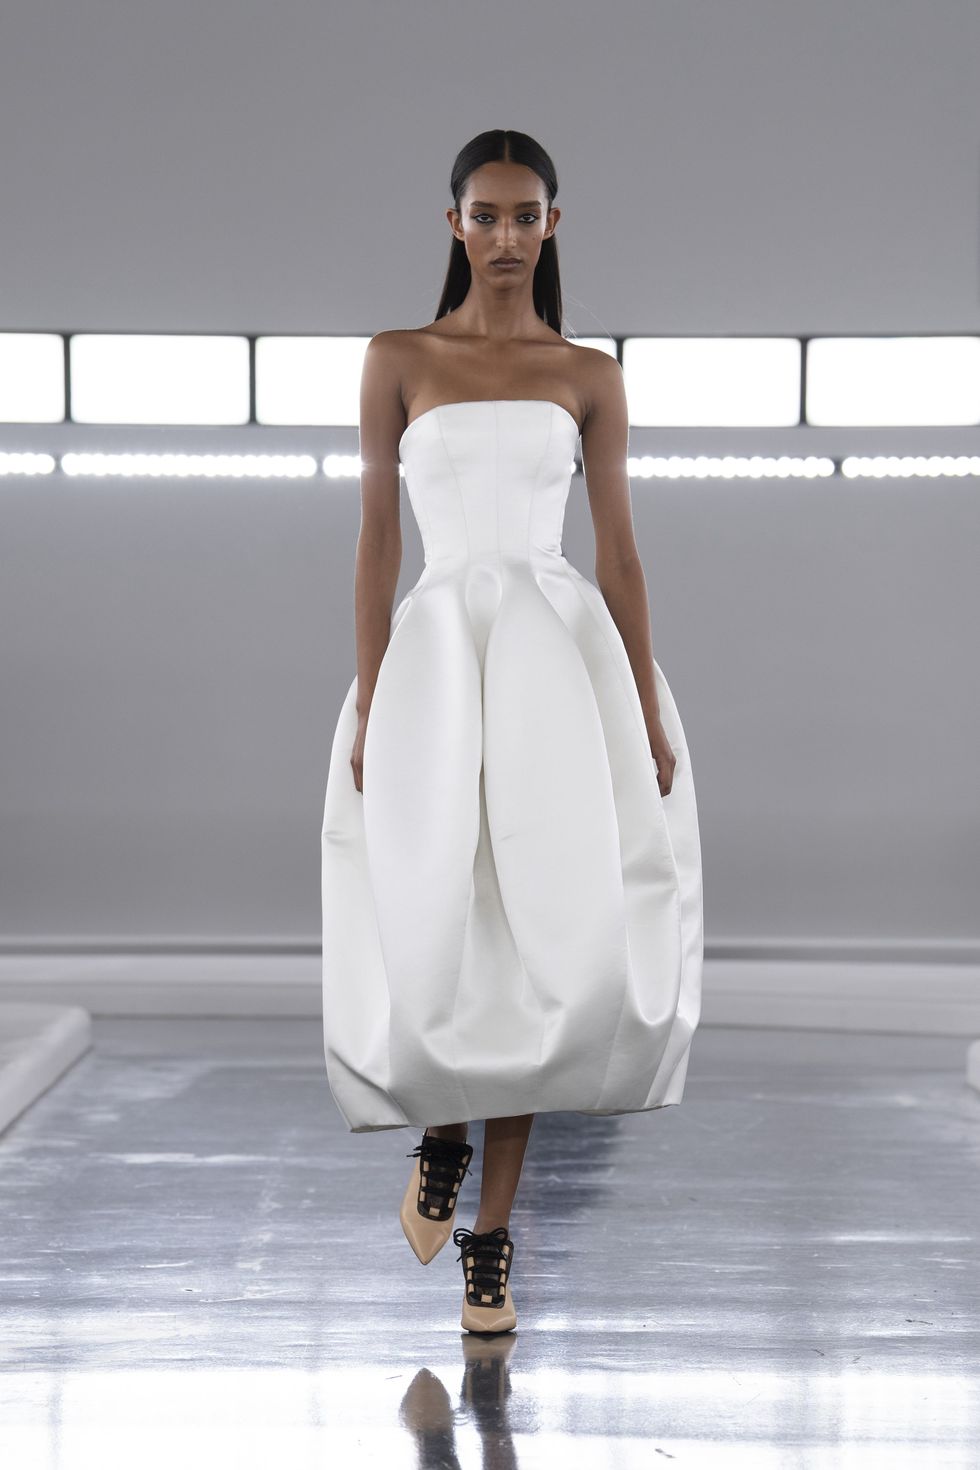 a person wearing a white dress